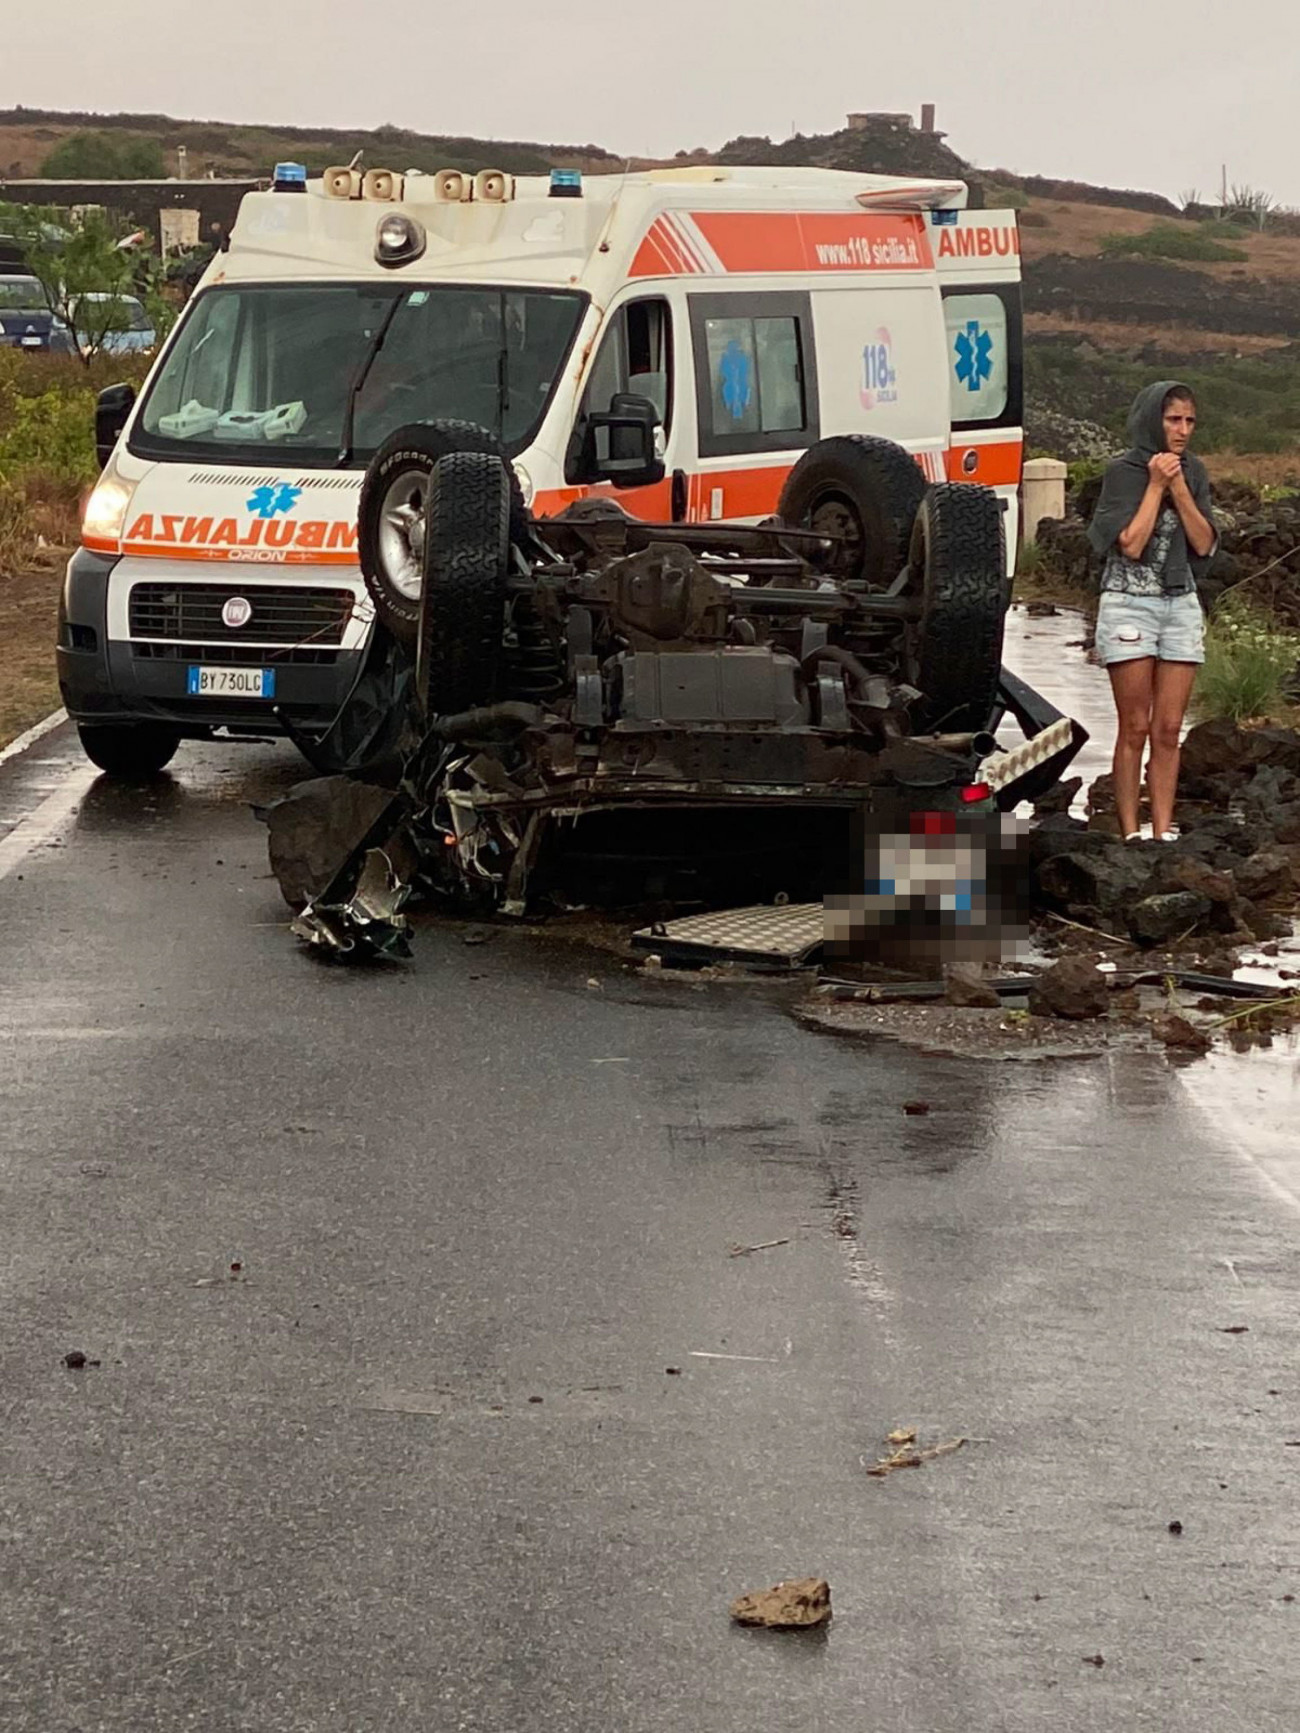 Pantelleria szigete, 2021. szeptember 10.
Az olasz polgári védelem sajtószolgálata által közreadott kép egy felborult autóról egy tornádó pusztítását követően a Szicília közelében fekvő Pantelleria szigetén 2021. szeptember 10-én. A mentőalakulatok tagjainak közlése szerint két személy meghalt, kilencen megsérültek és néhány embert még keresnek.
MTI/EPA/ANSA/ olasz polgári védelem sajtószolgálata